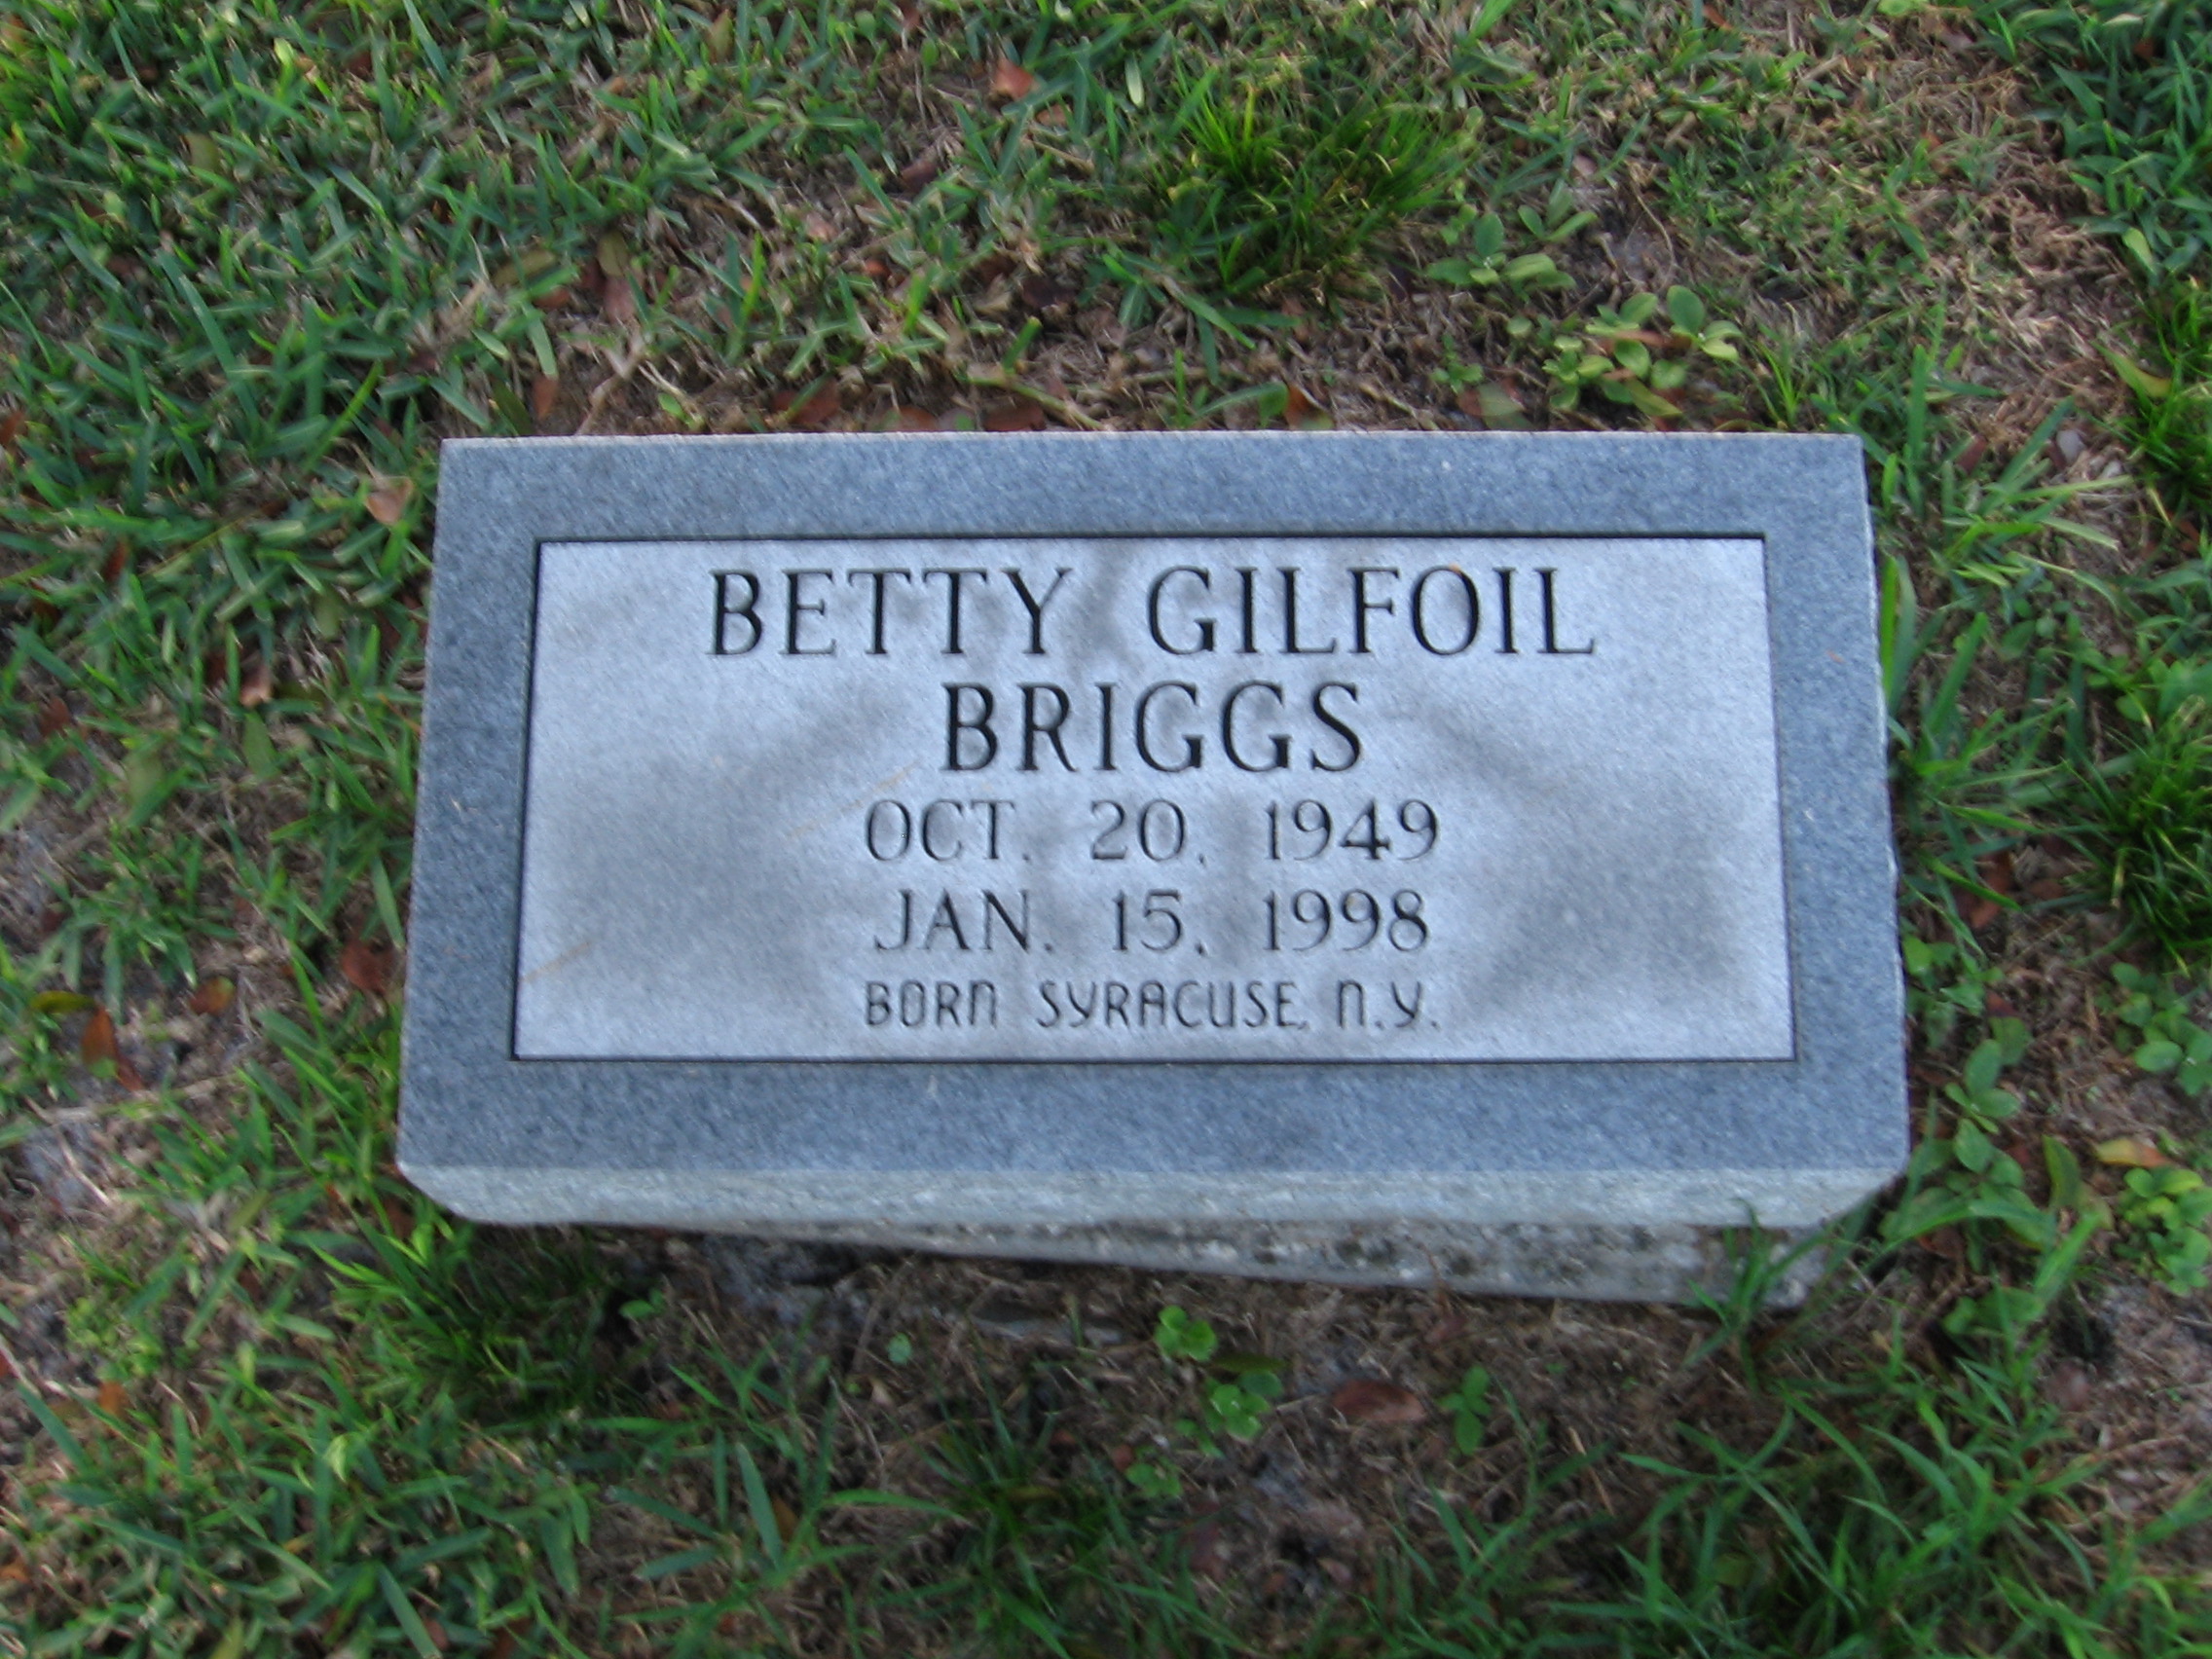 Betty Gilfoil Briggs